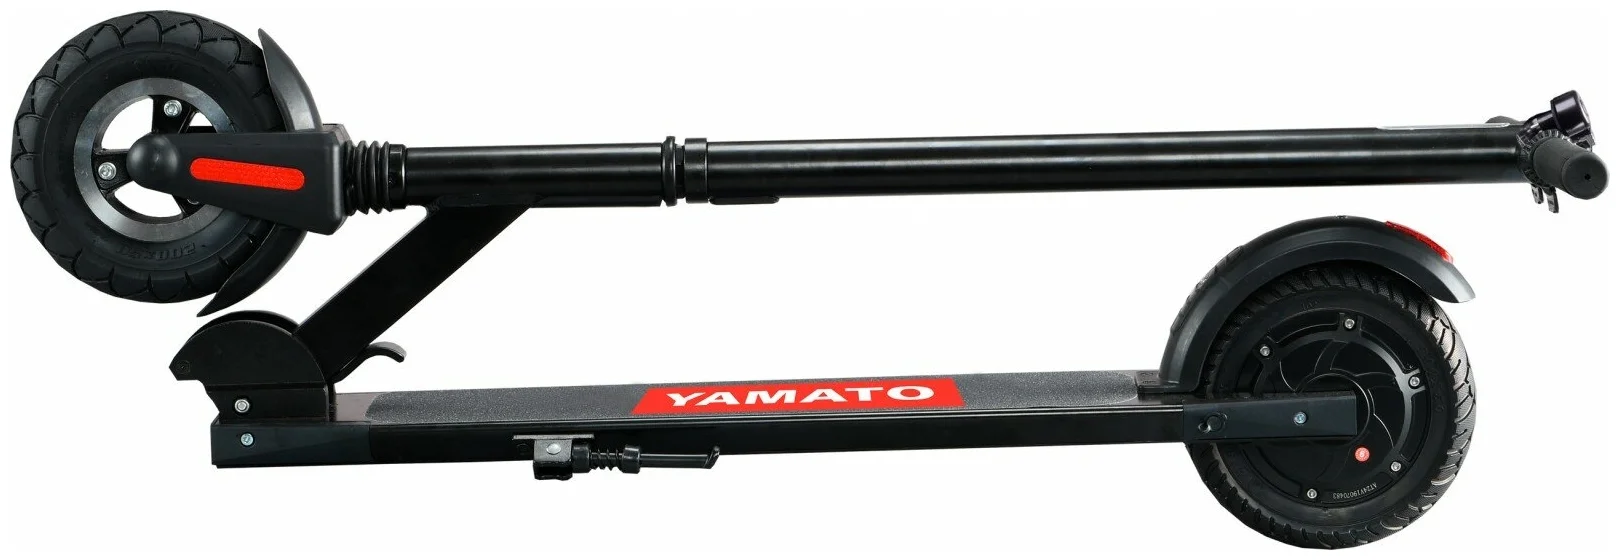 Yamato PES 0810 - материал рамы алюминиевый сплав